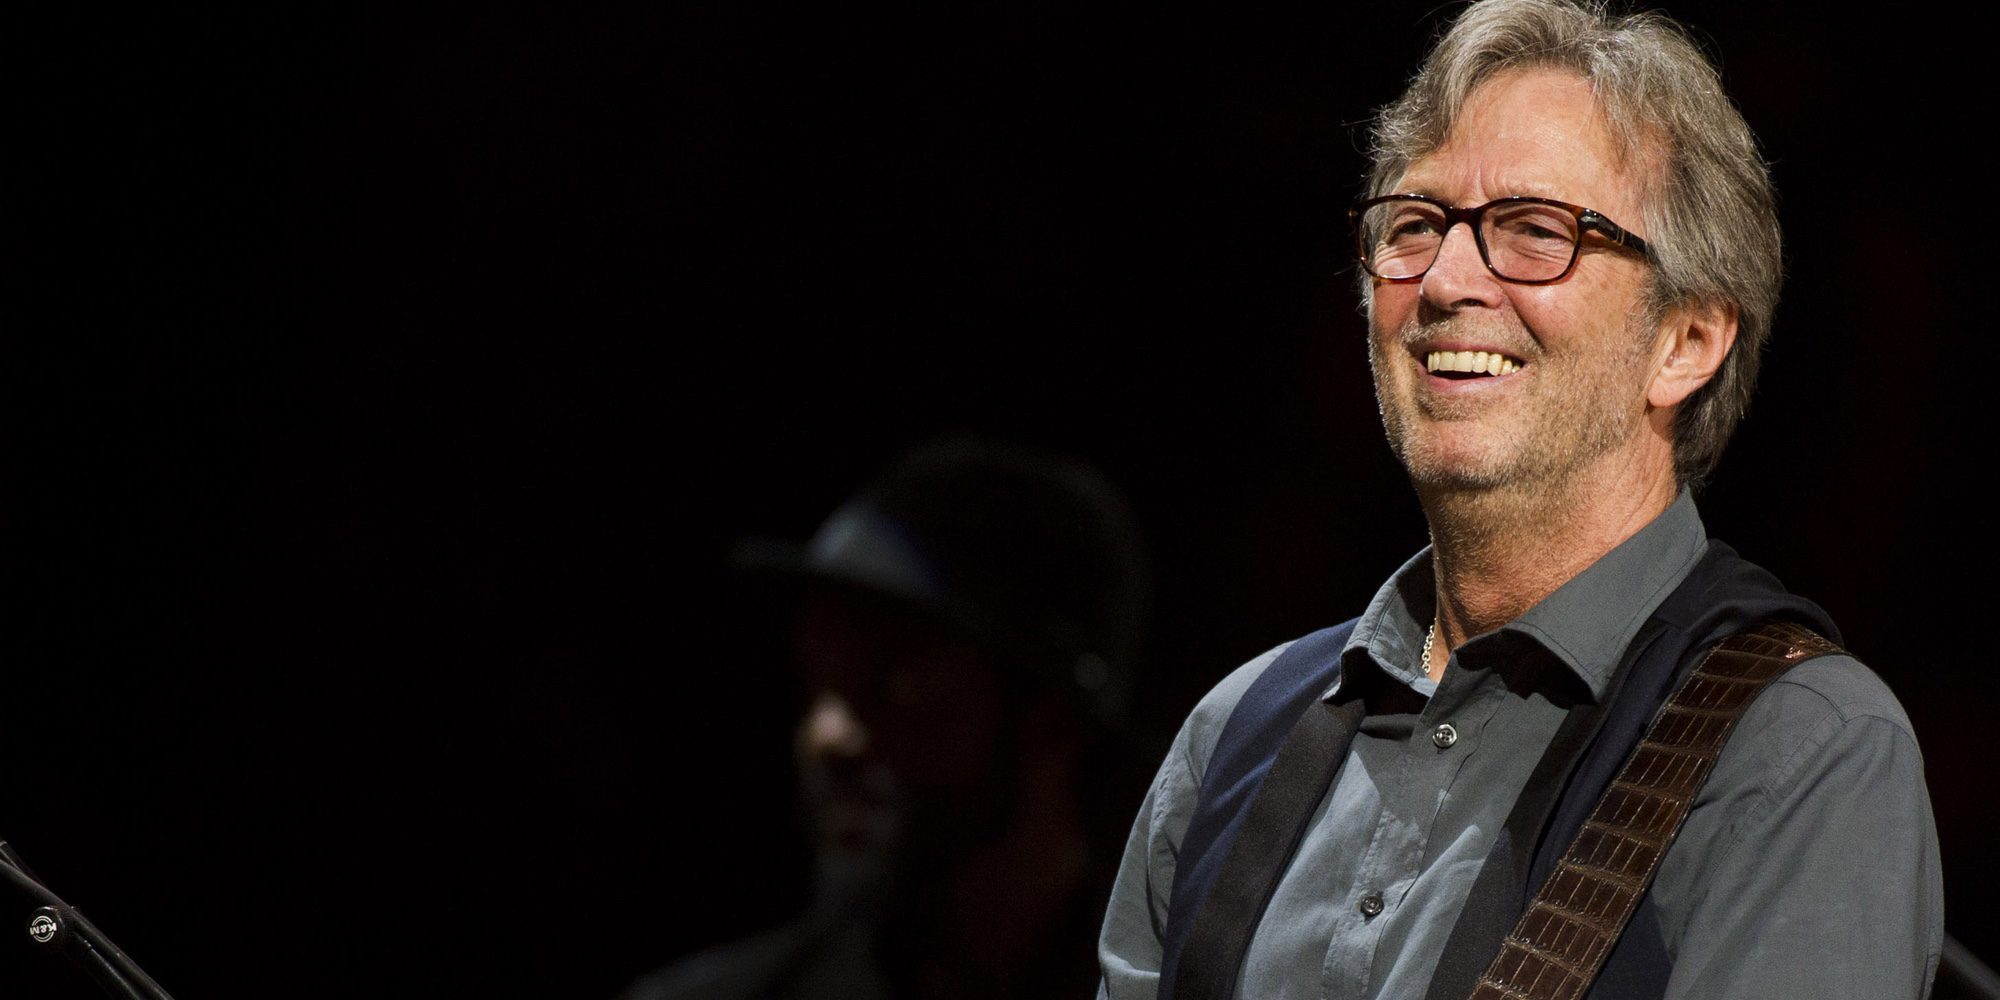 La vida golpea a Eric Clapton: "Me estoy quedando sordo y mis manos apenas funcionan"